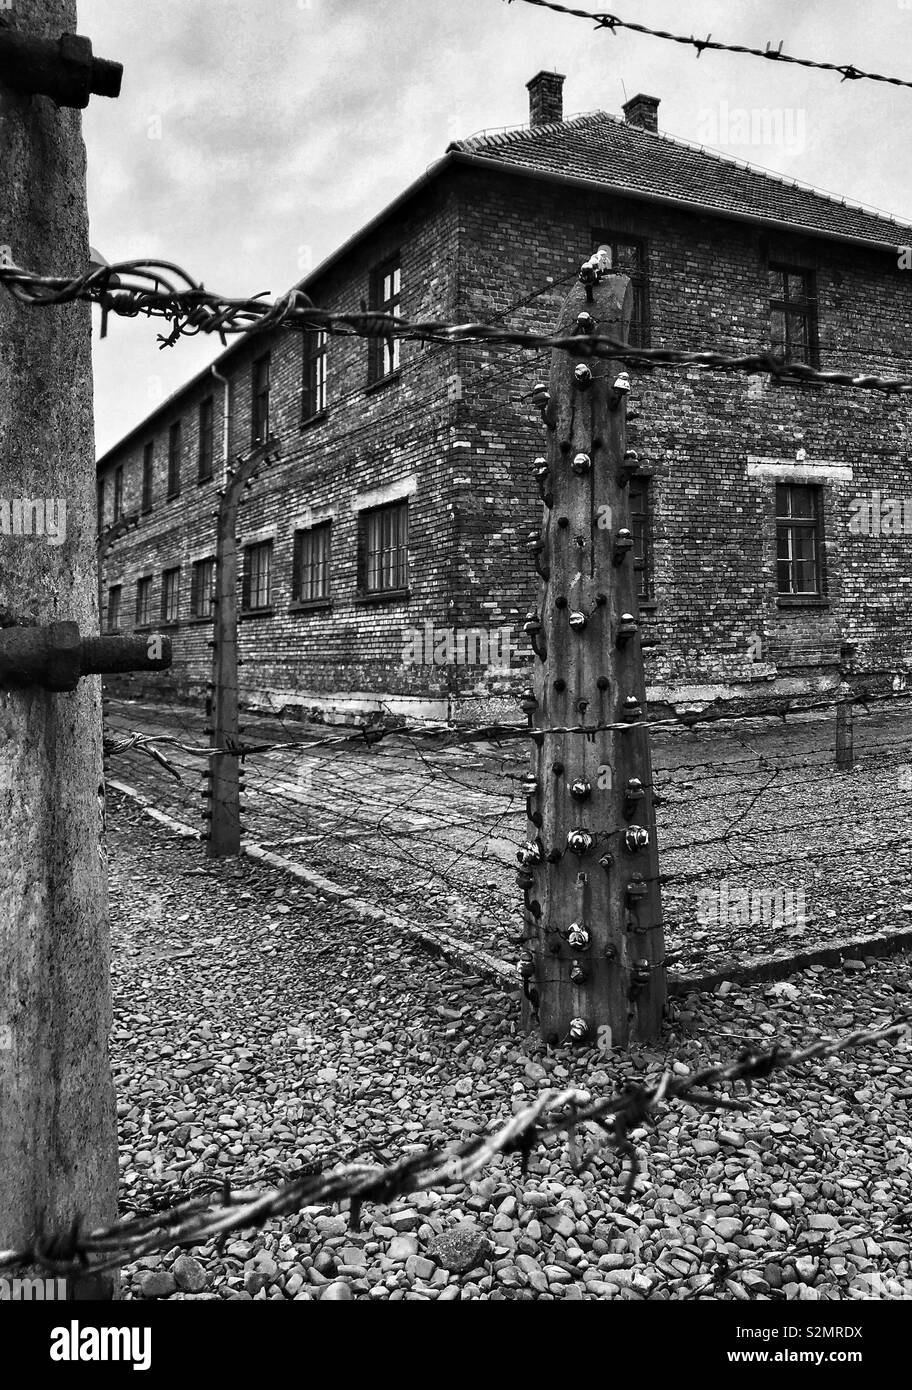 Eine Außenansicht des Gebäudes durch elektrische Zäune im WW2 NS-Konzentrationslagers Auschwitz in Oswiecim, Polen umgeben. Jetzt ein Memorial Museum und UNESCO-Weltkulturerbe. © COLIN HOSKINS. Stockfoto